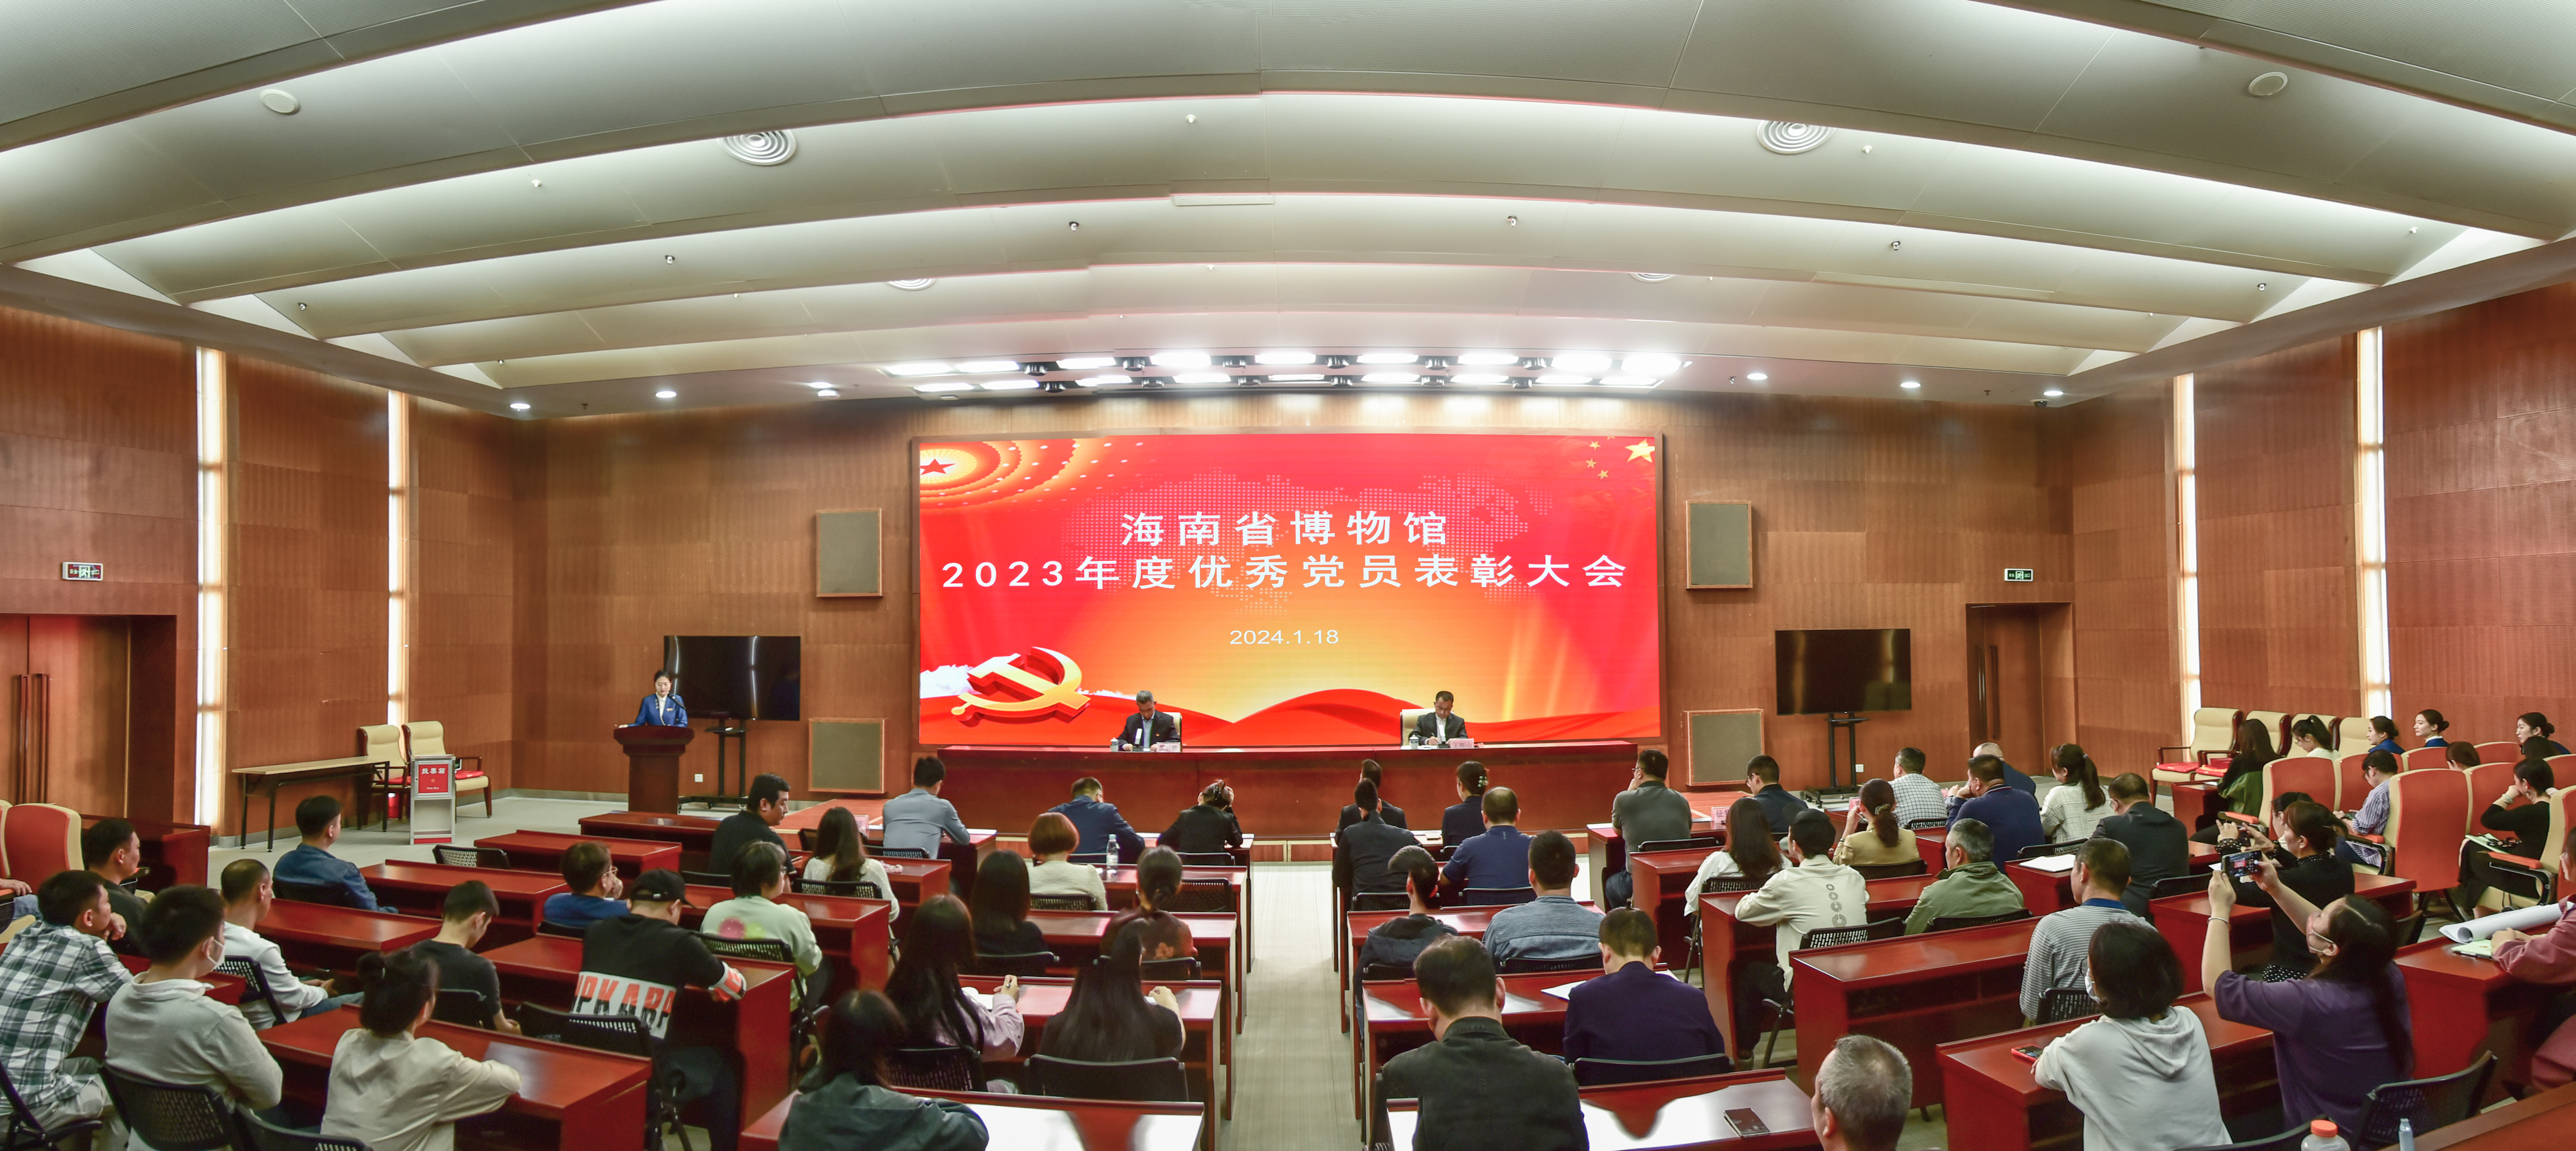 海南省博物馆召开2023年度优秀党员、优秀员工表彰大会